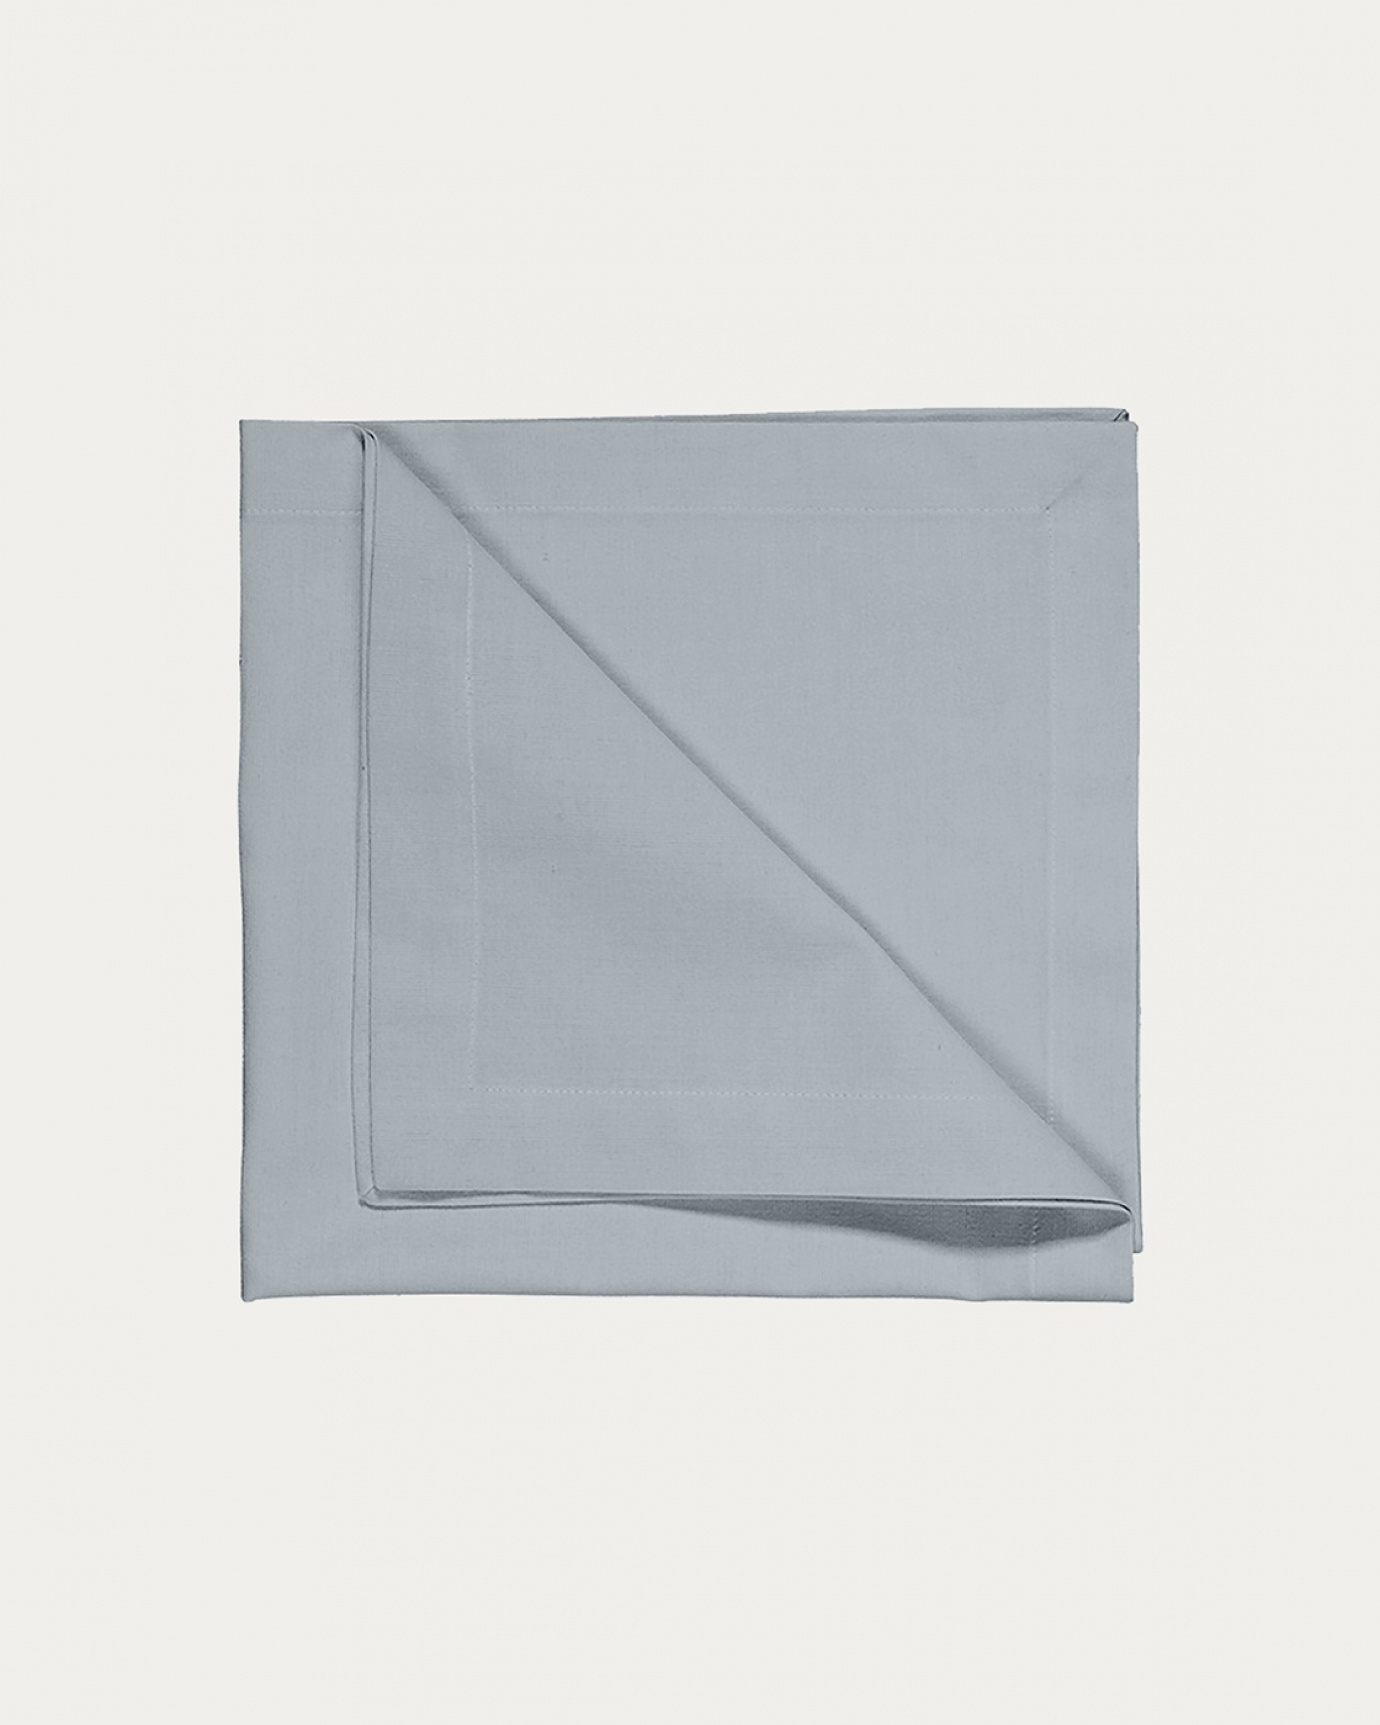 Image du produit serviette de table ROBERT bleu nuage en coton doux de LINUM DESIGN. Taille 45 x 45 cm et vendu en lot de 4.